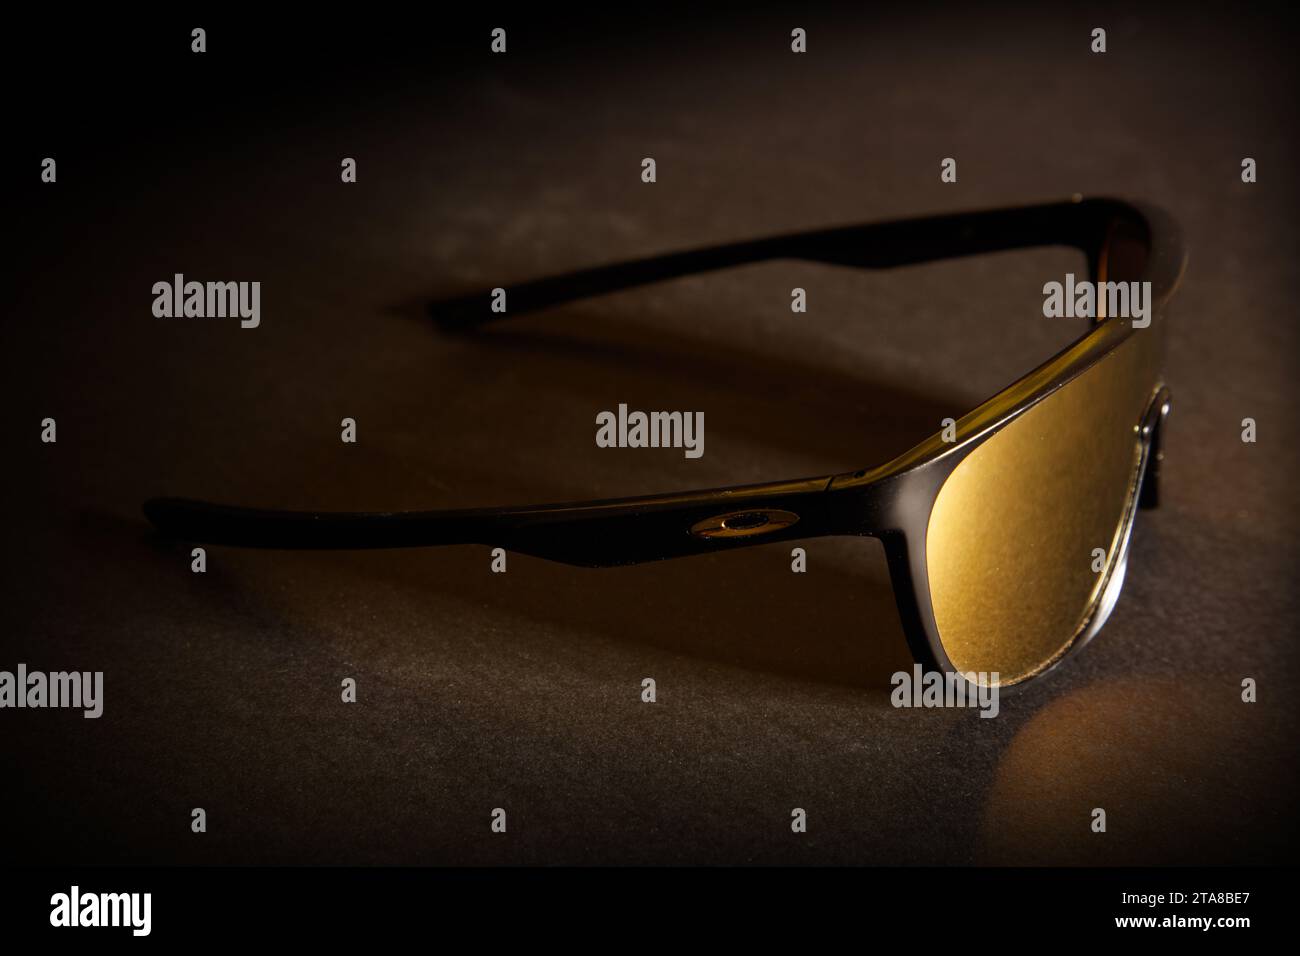 Eine fantastische Studioaufnahme einer sportlichen Oakley Sonnenbrille mit goldener Linse vor dunklem schwarzem Hintergrund Stockfoto